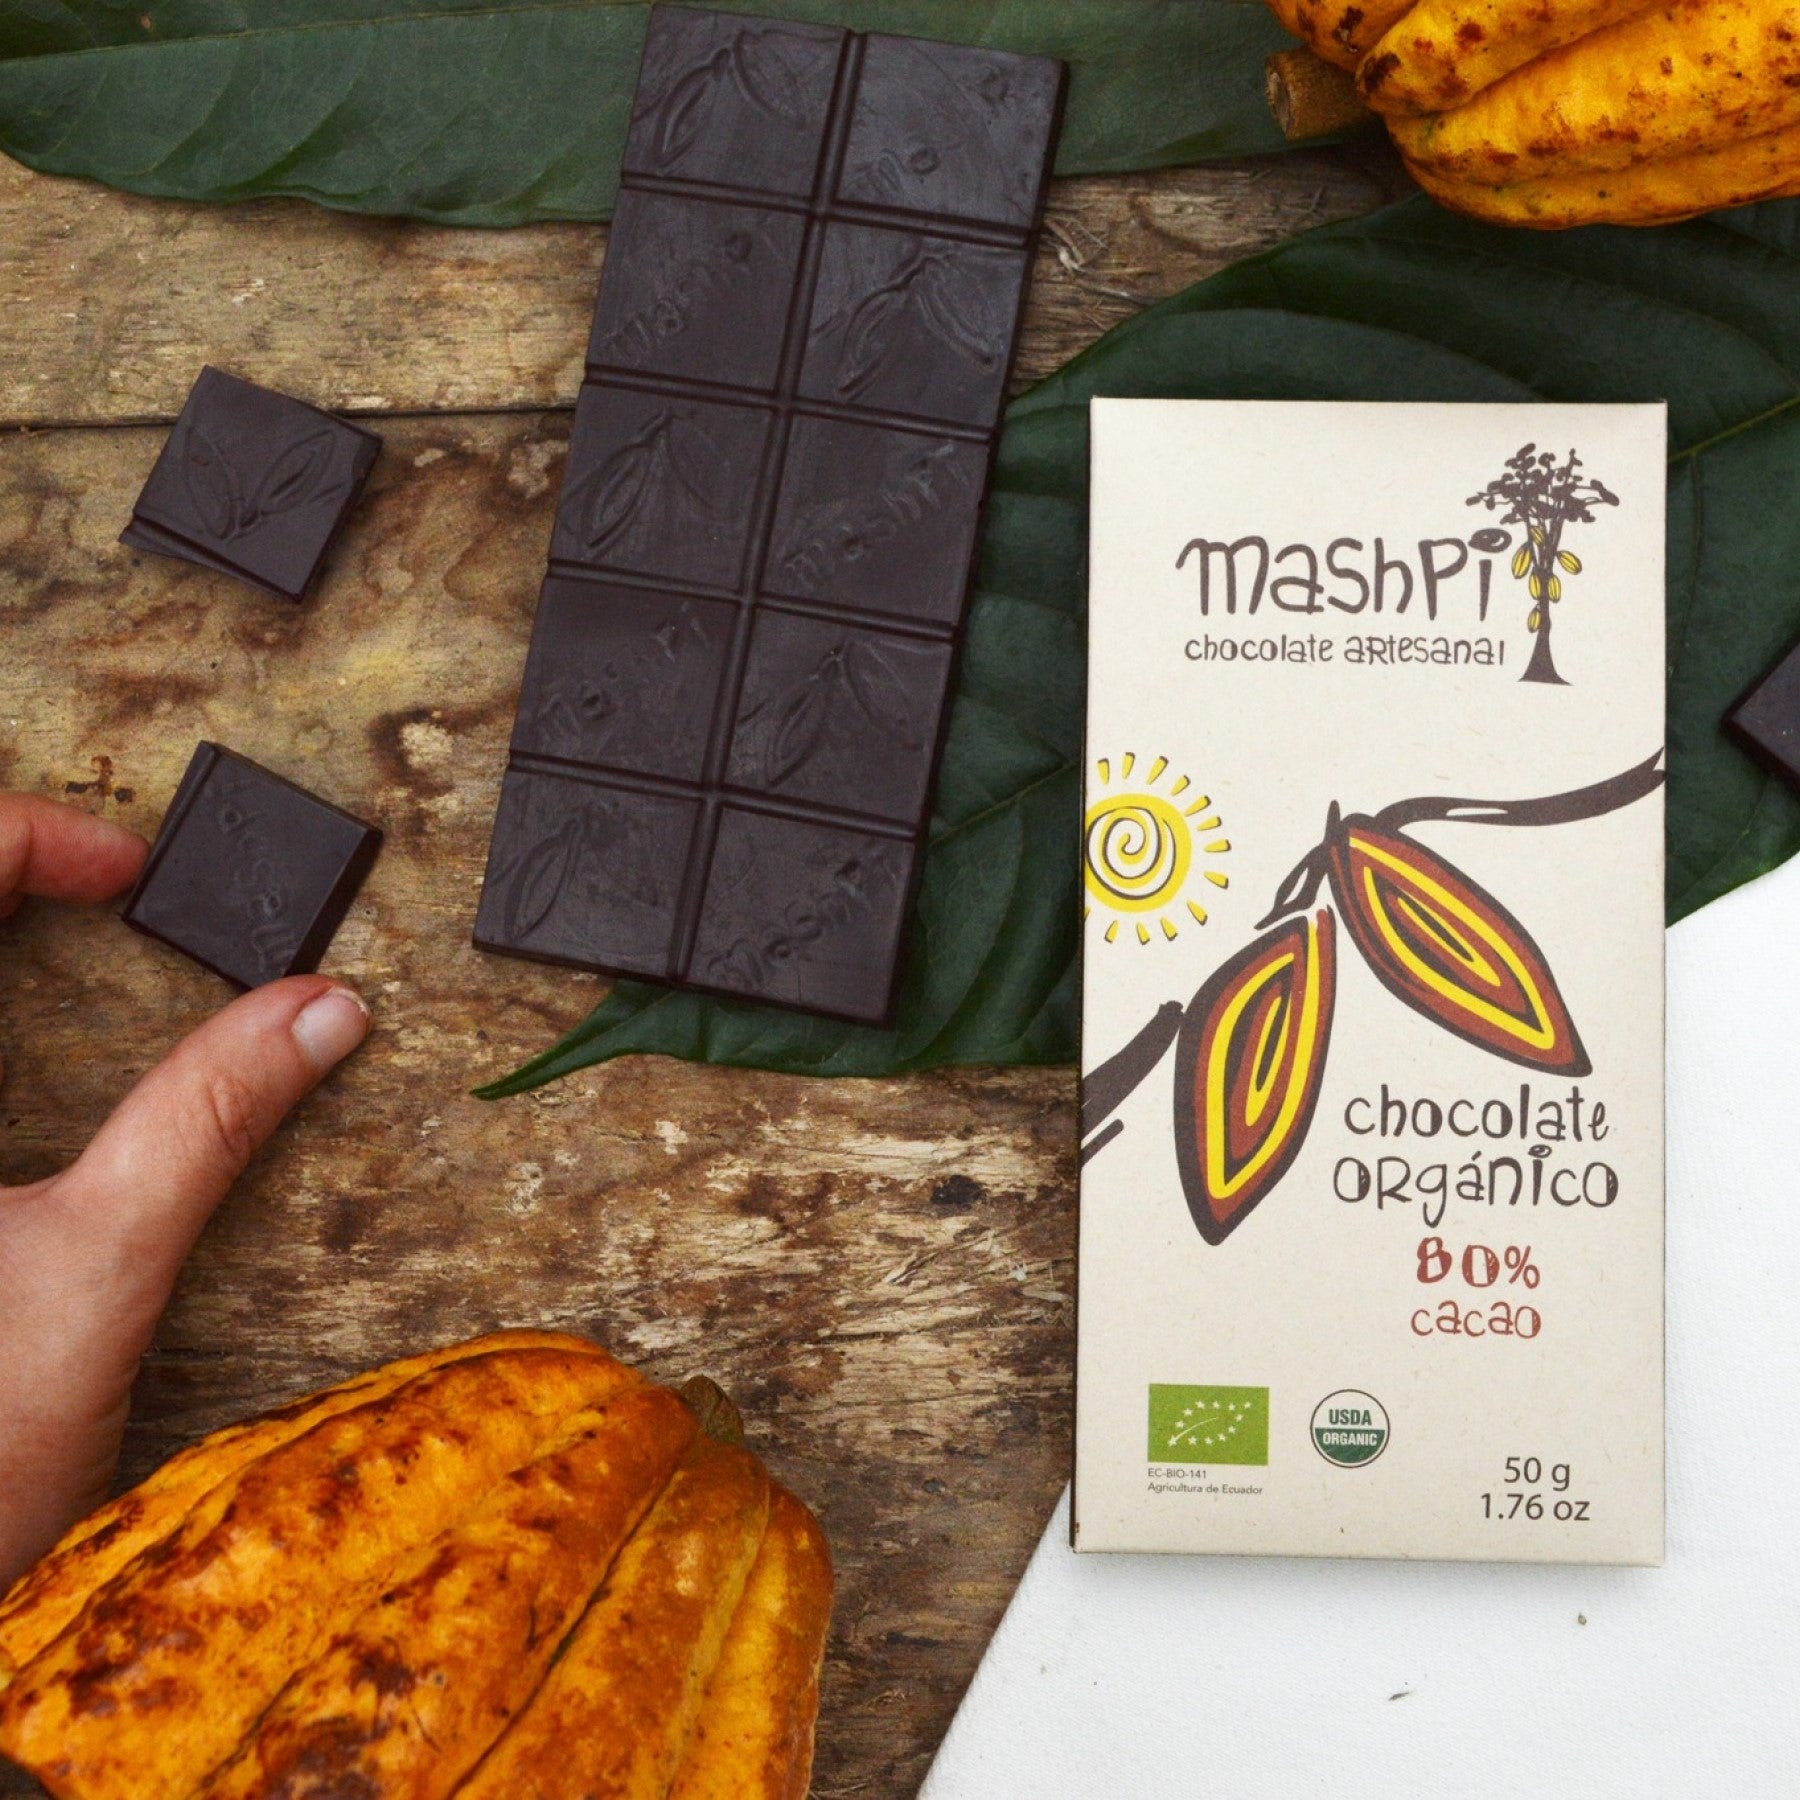 Mashpi Artesenal Chocolate Single Origin-Made in Ecuador. 80% Cacao content. USDA Organic Certified. Chocolate bar and cacao pods.